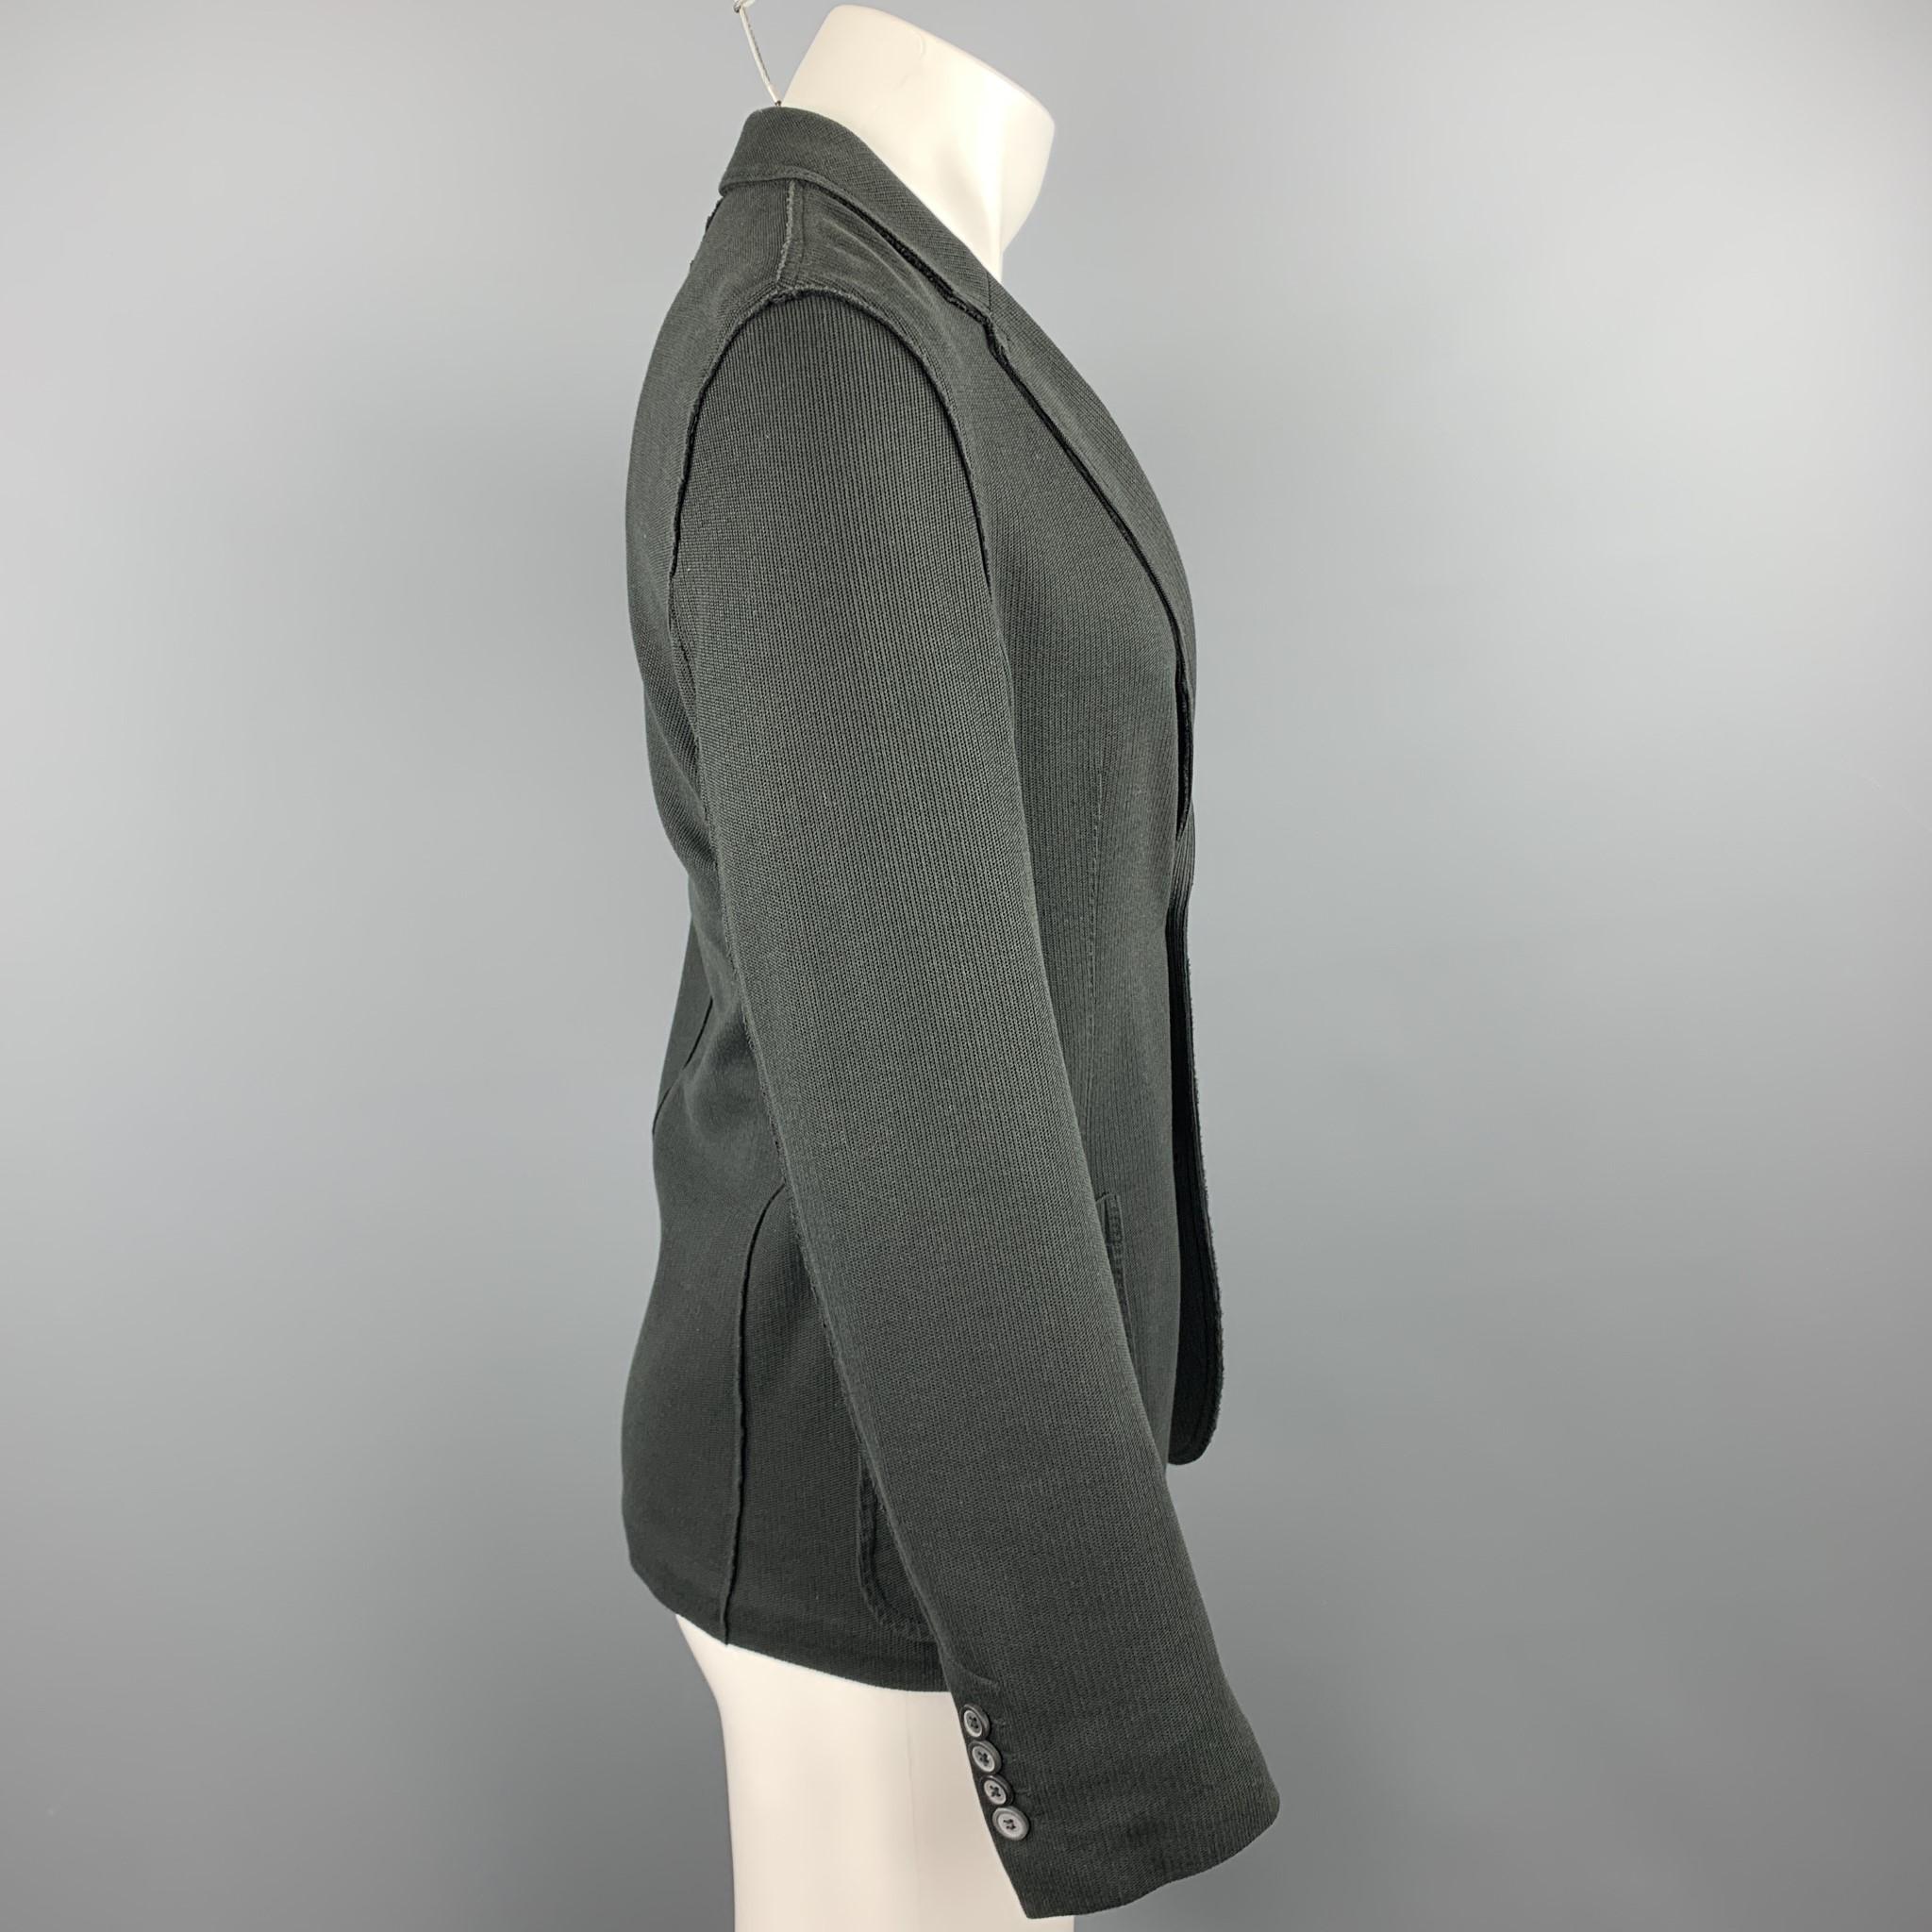 Black LANVIN Size 38 Charcoal Woven Cotton Notch Lapel Sport Coat Jacket